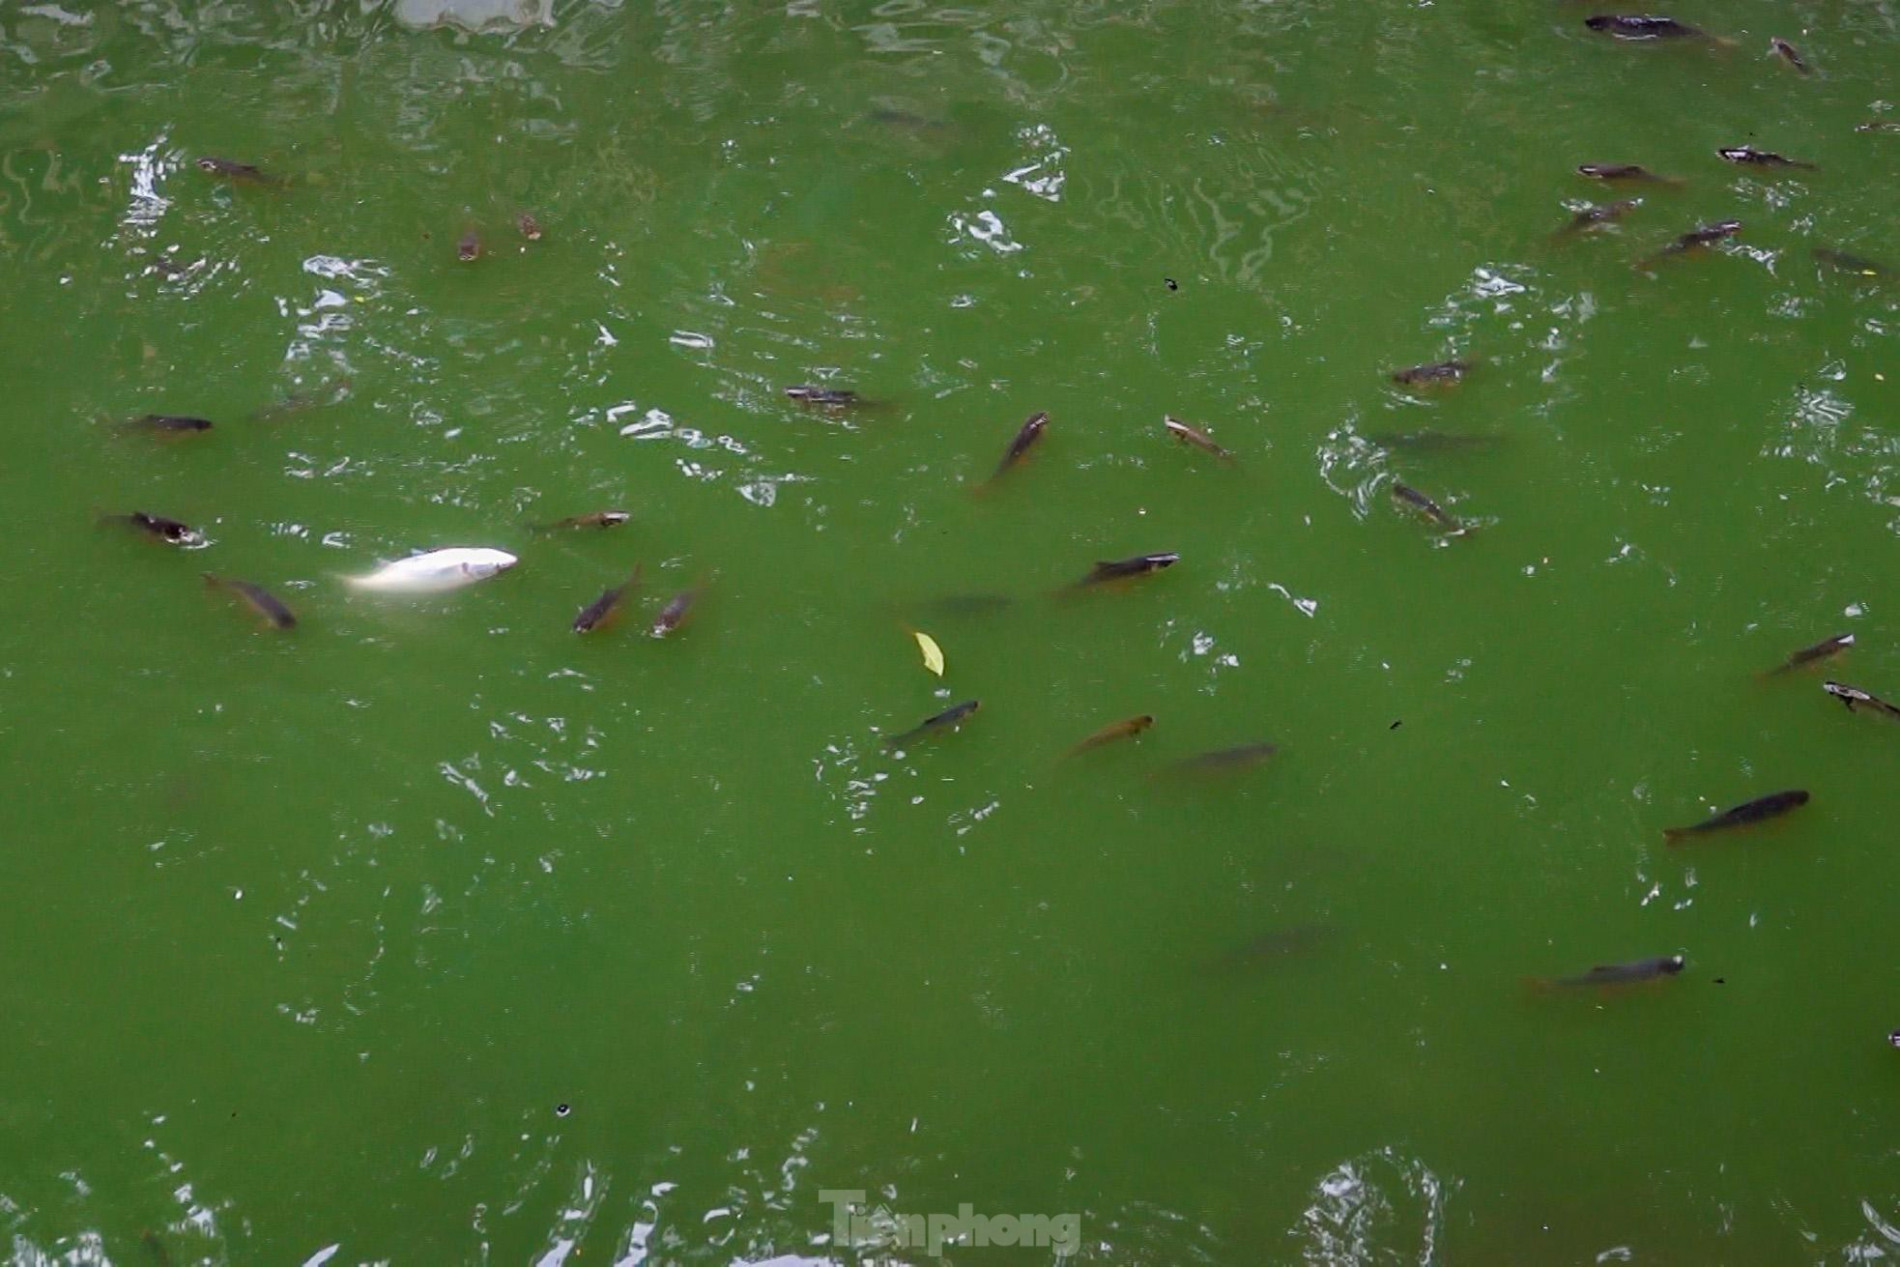 Nước sông Tô Lịch đổi màu xanh ngắt, người dân đội mưa bắt cả tạ cá ảnh 7